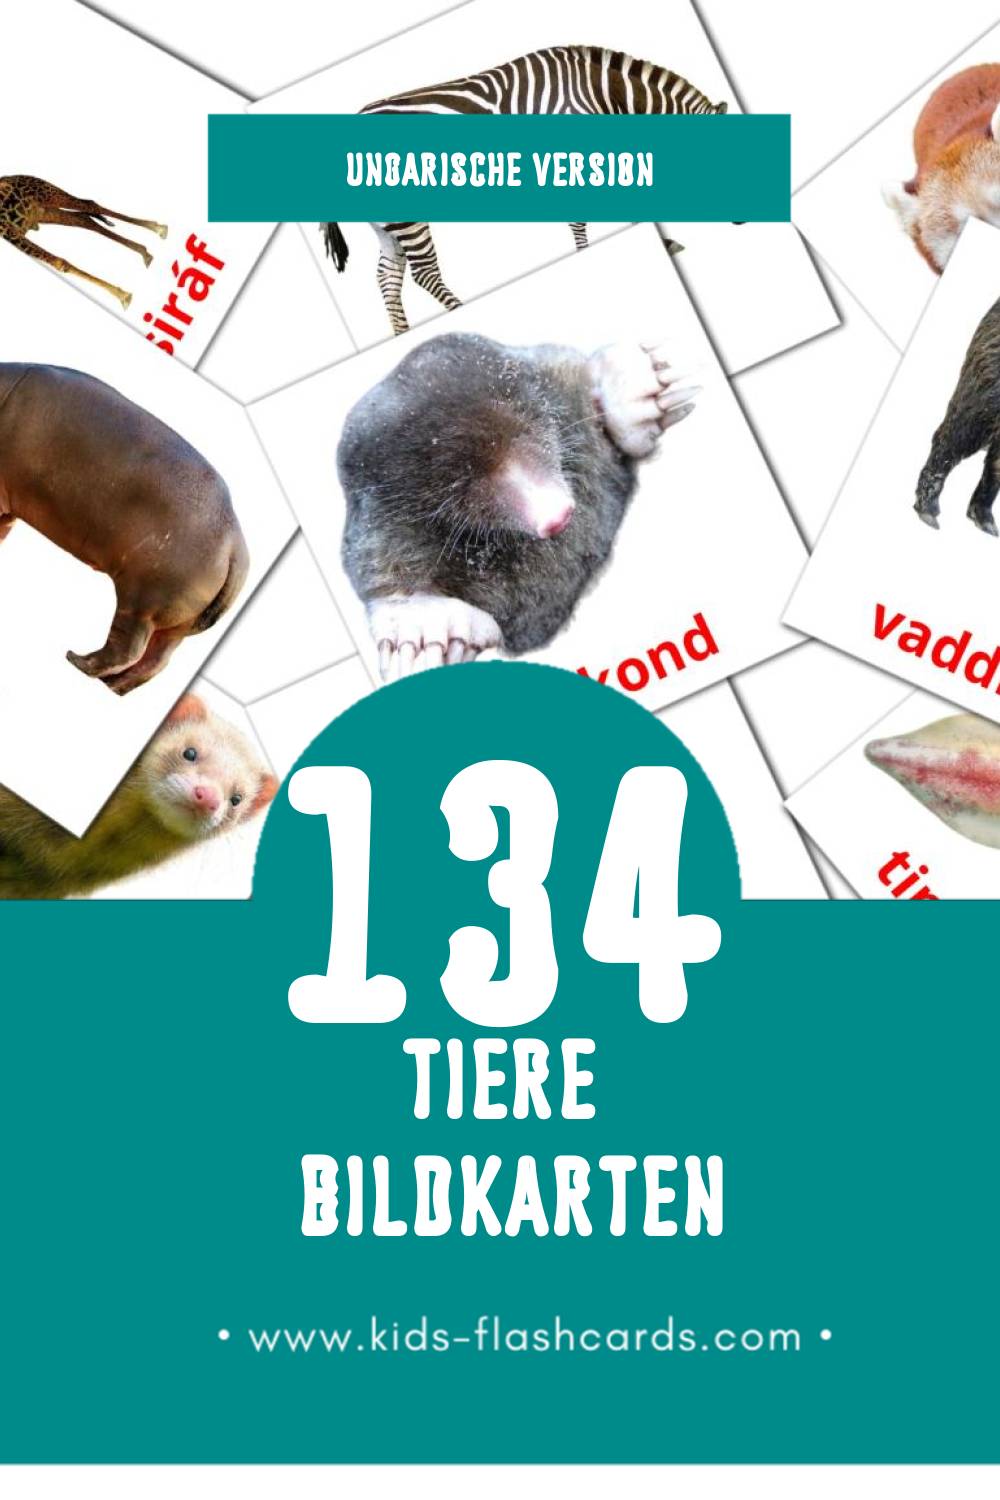 Visual Állatok Flashcards für Kleinkinder (134 Karten in Ungarisch)